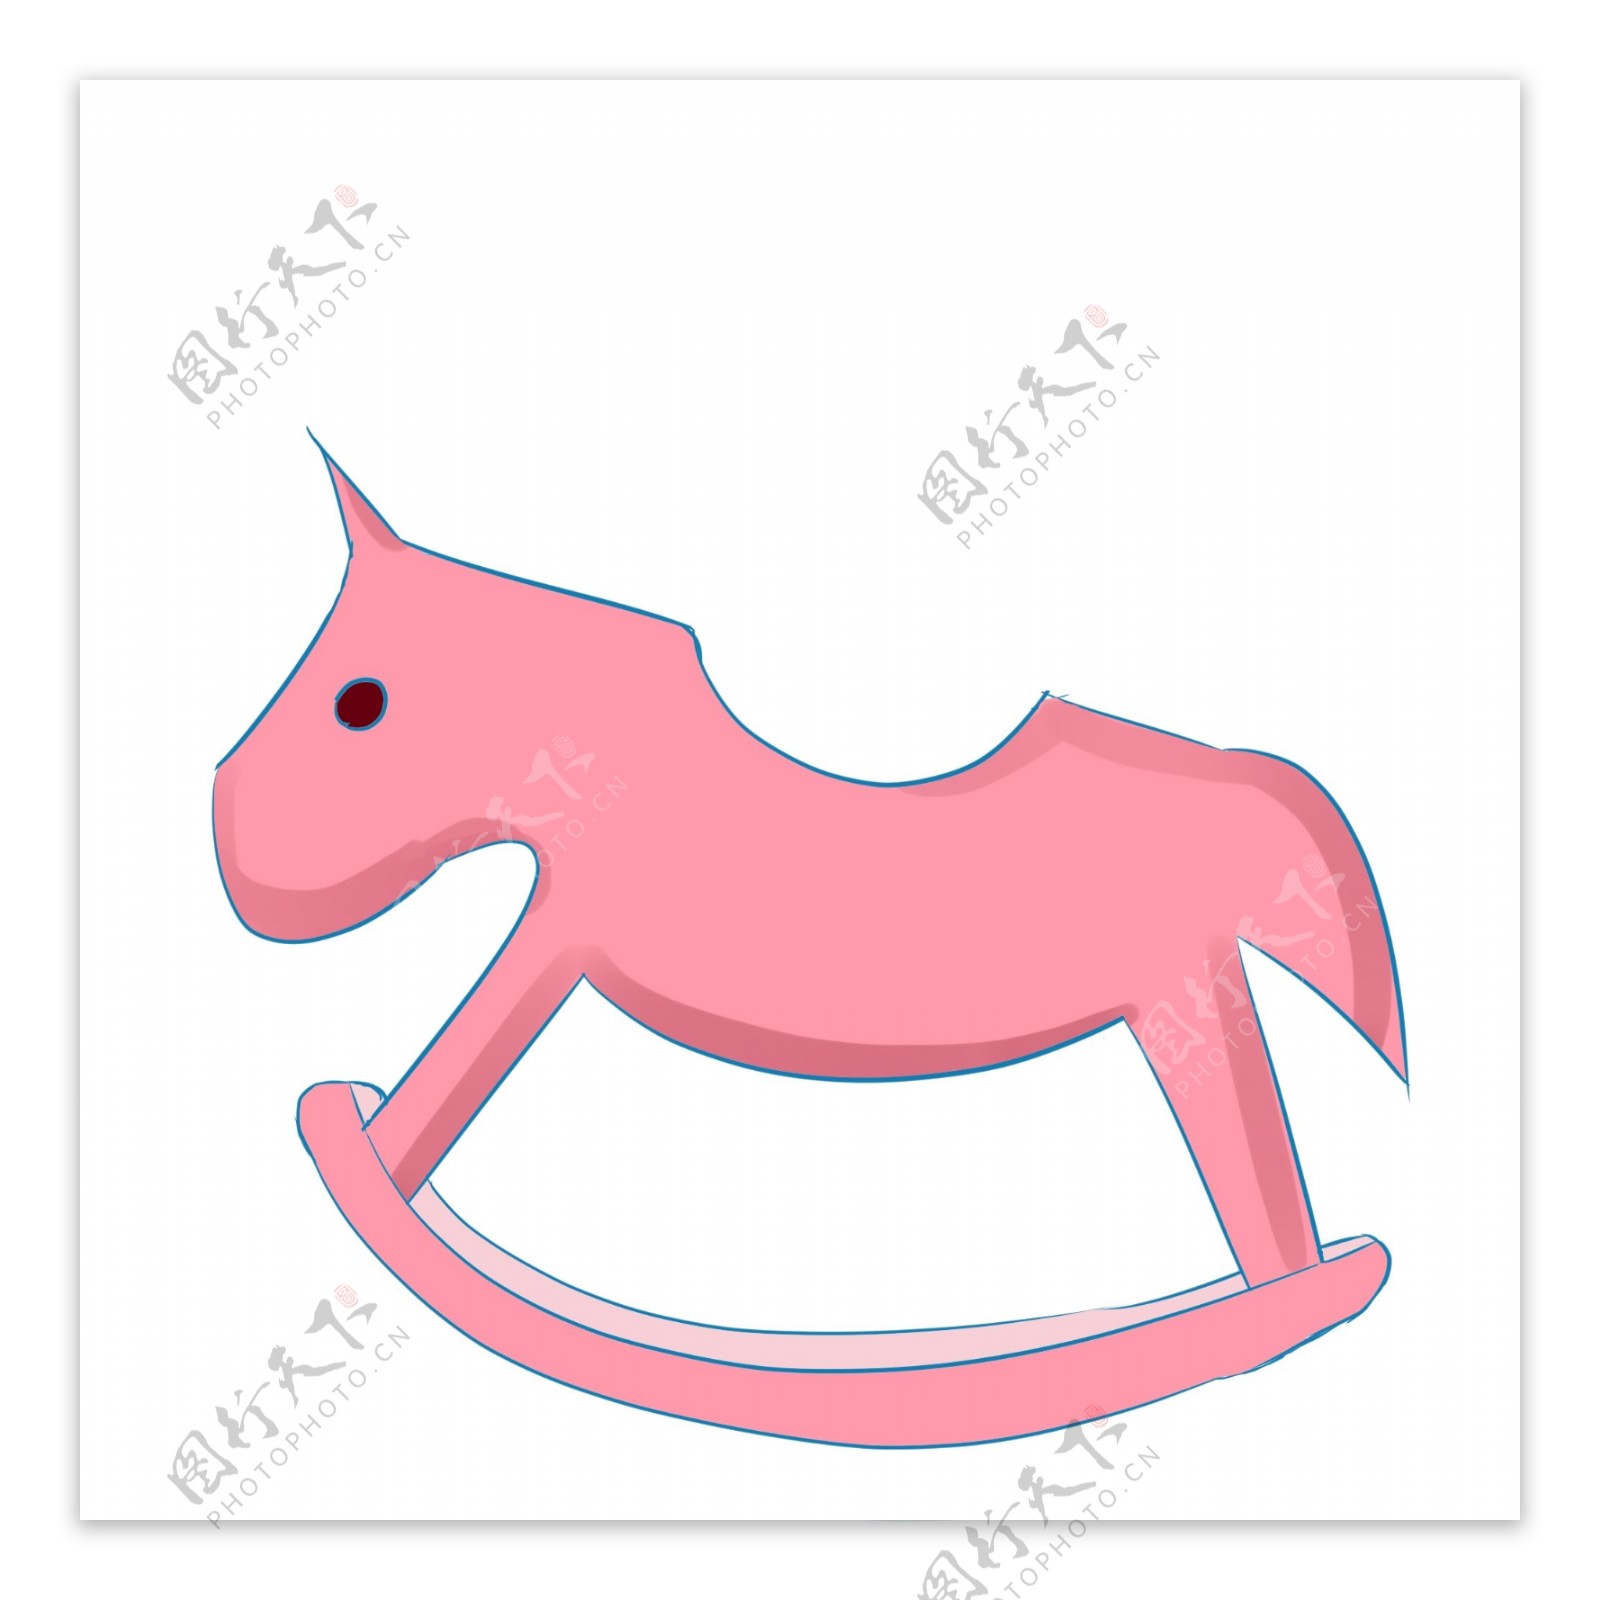 粉色木马摇椅插图